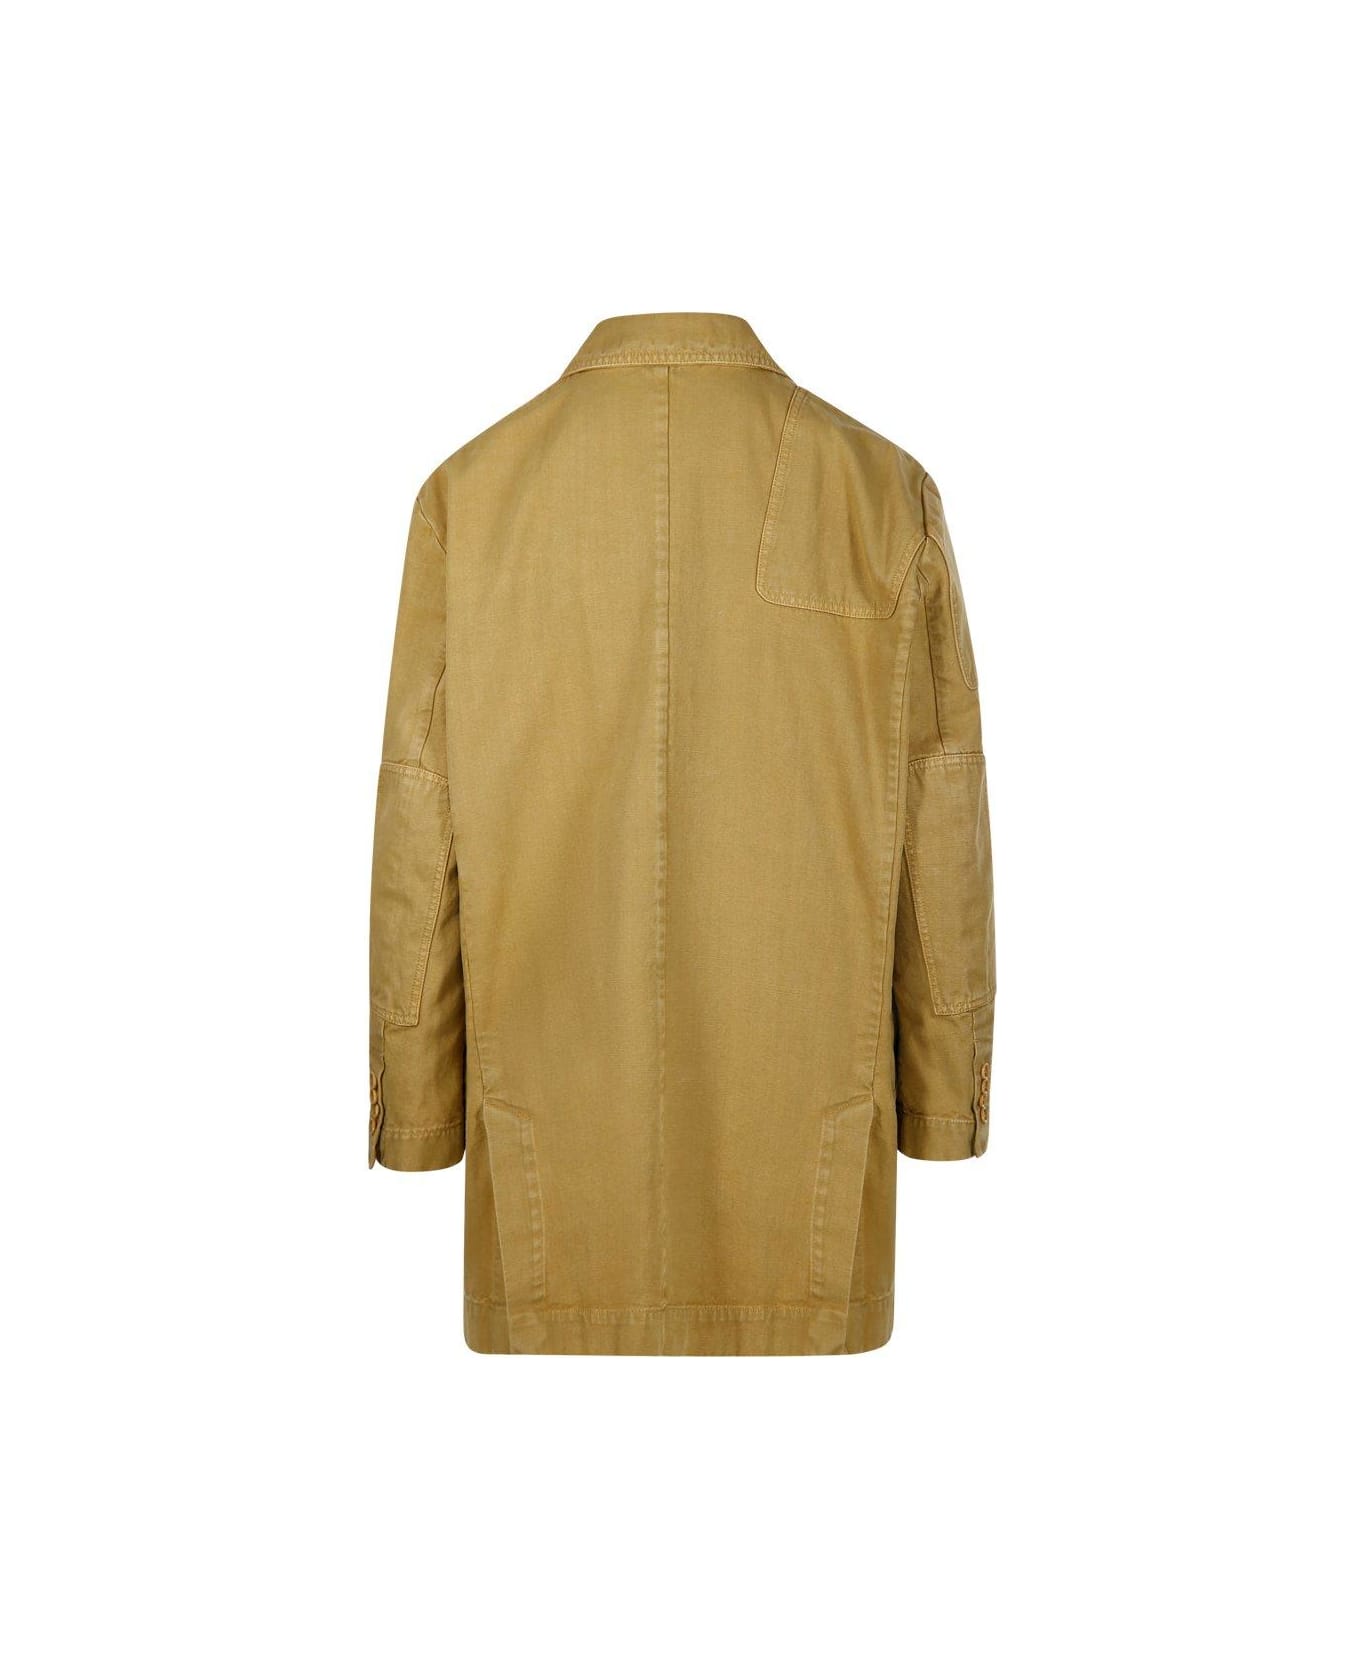 Max Mara Single-breasted Long-sleeved Jacket - Yellow コート